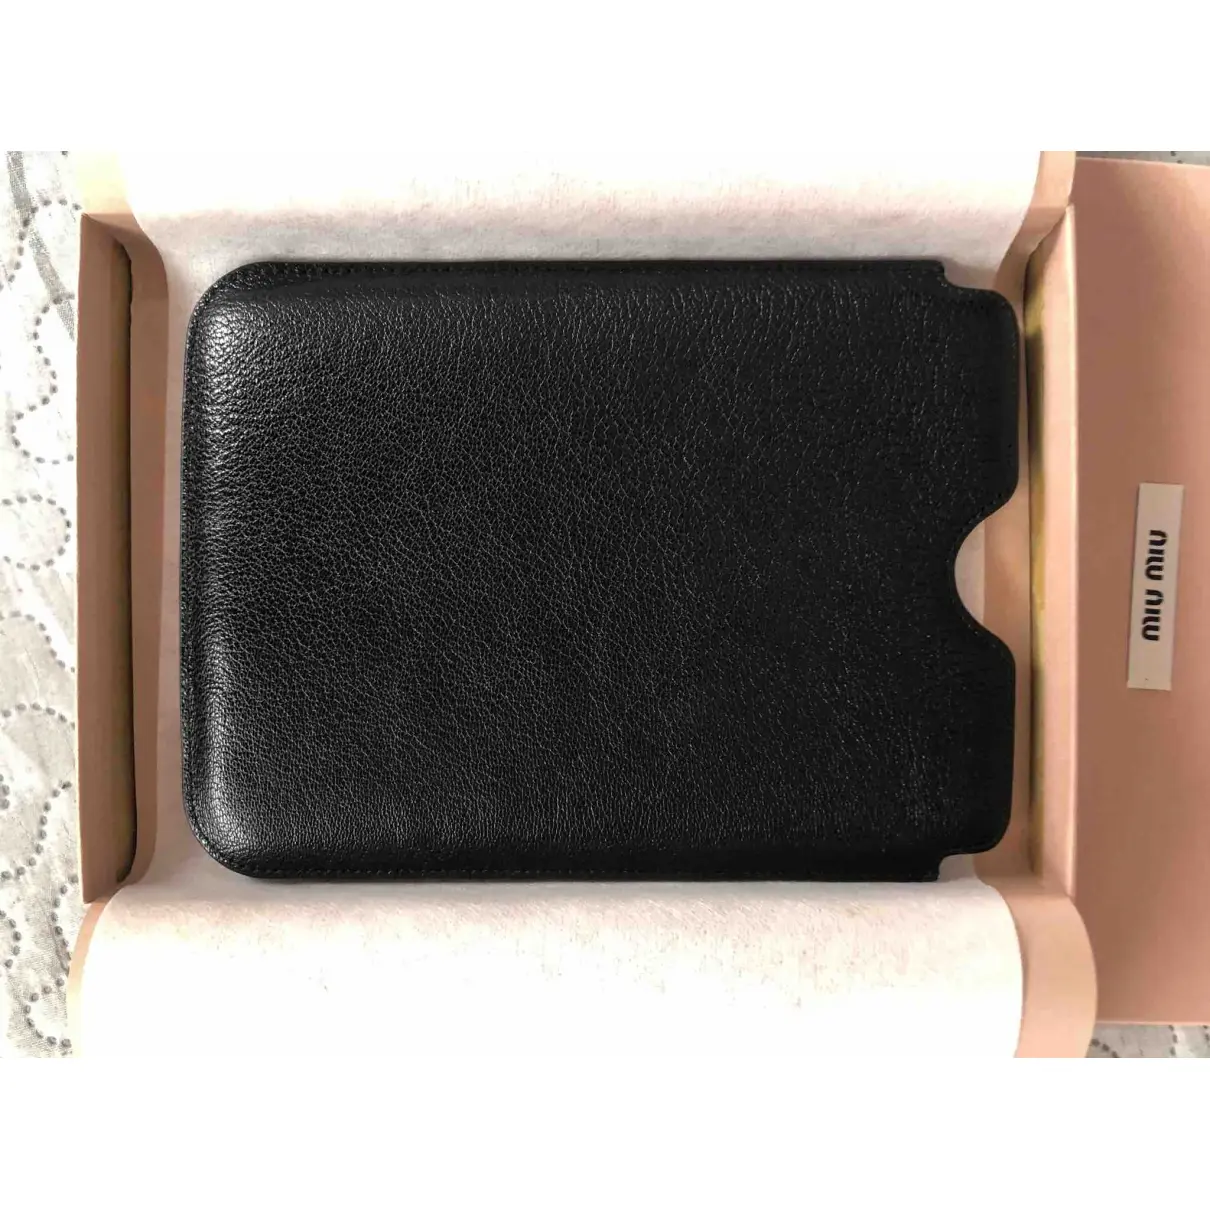 Buy Miu Miu Leather clutch online